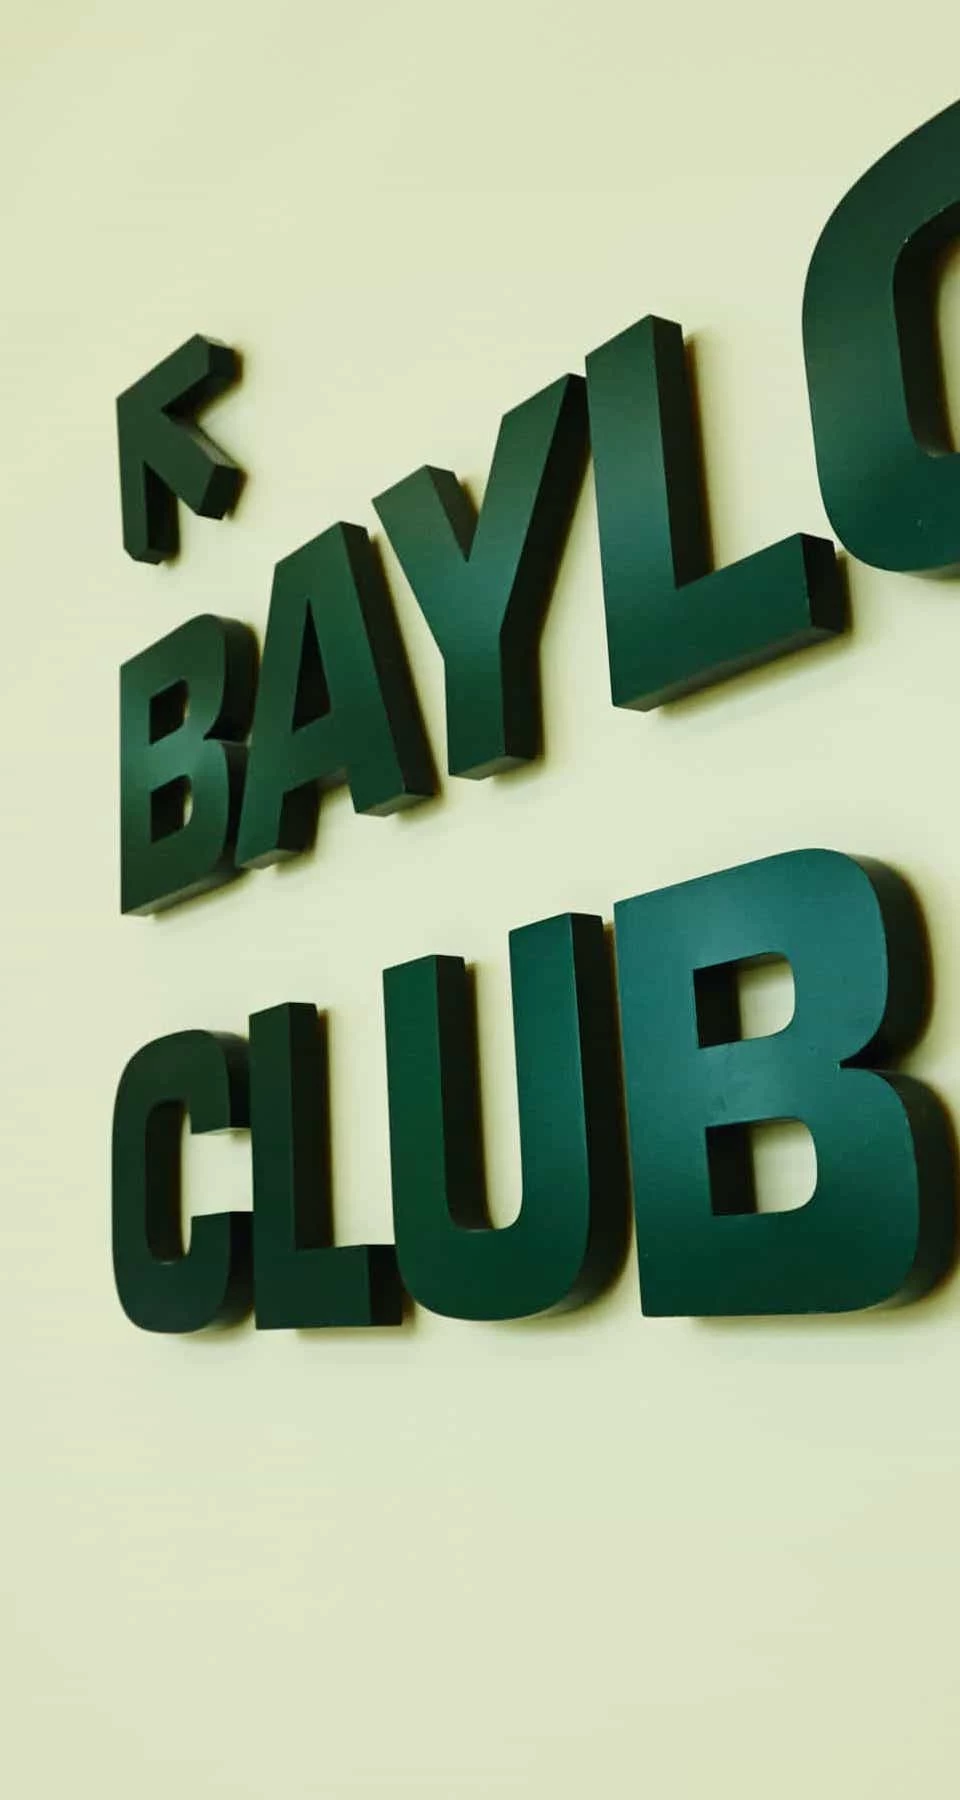 Baylor Club - Entrance